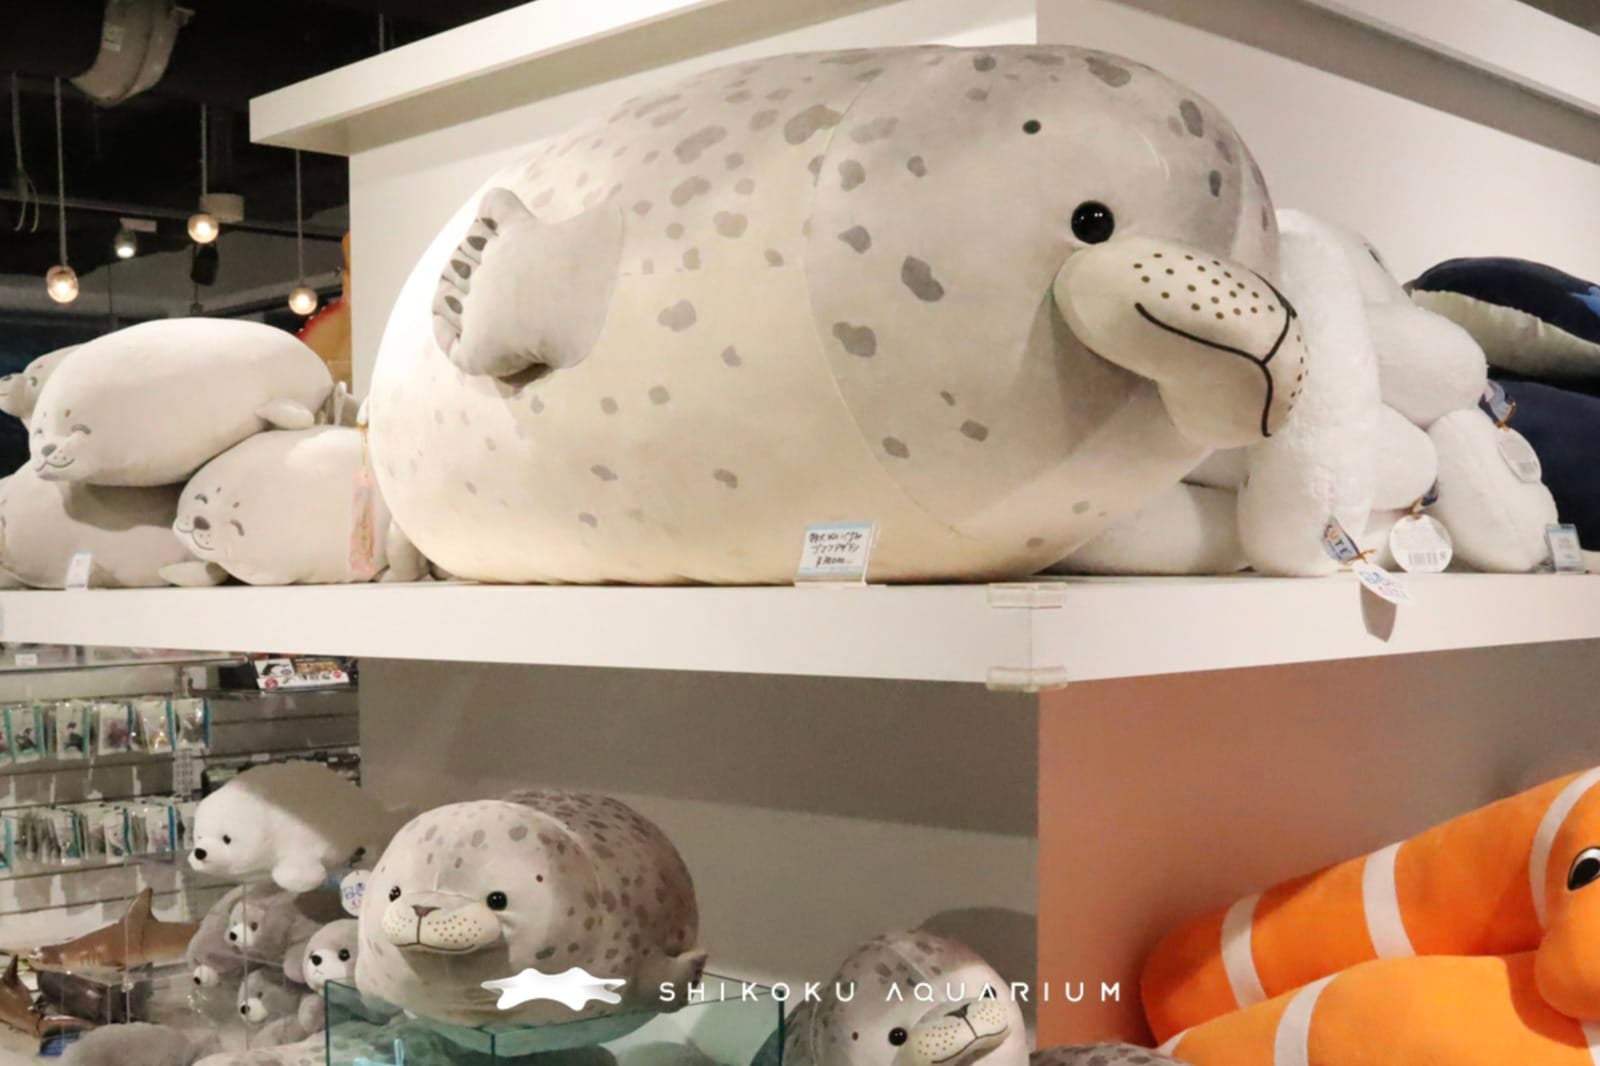 ตุ๊กตาแมวน้ำยักษ์ ตุ๊กตาอุ๋ง พิพิธภัณฑ์สัตว์น้ำชิโกกุ ญี่ปุ่น Shikoku Aquarium